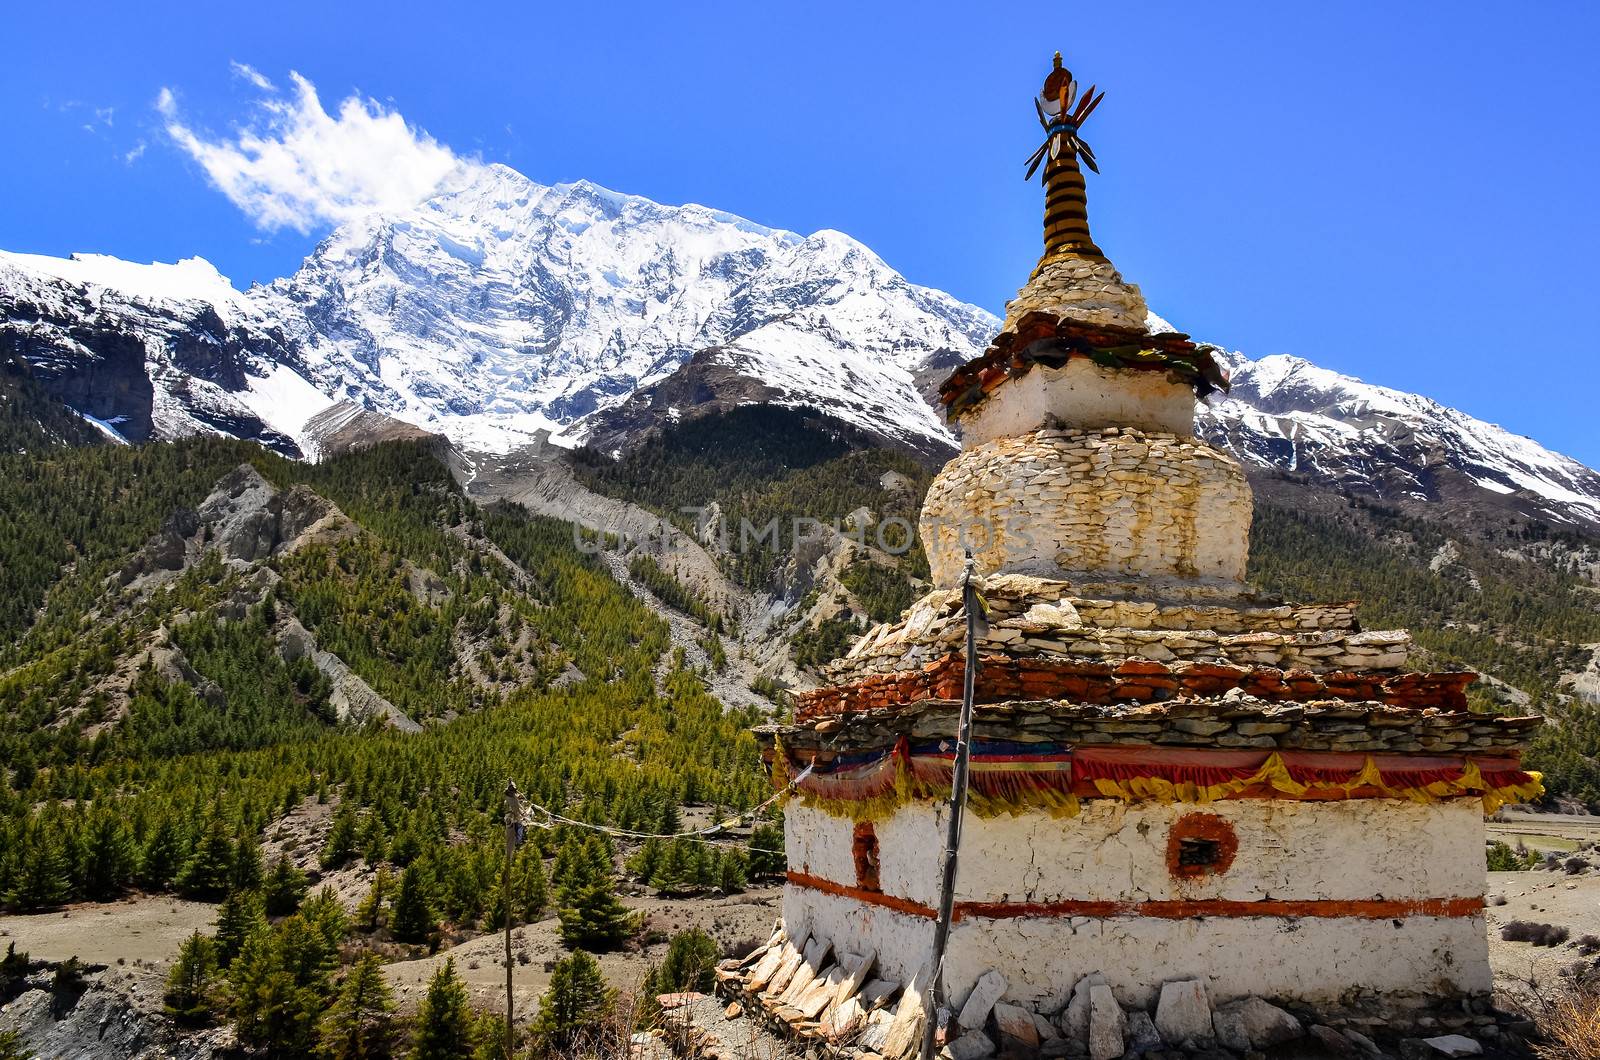 Himalayas mountain view with buddhist chapel stupa, Nepal